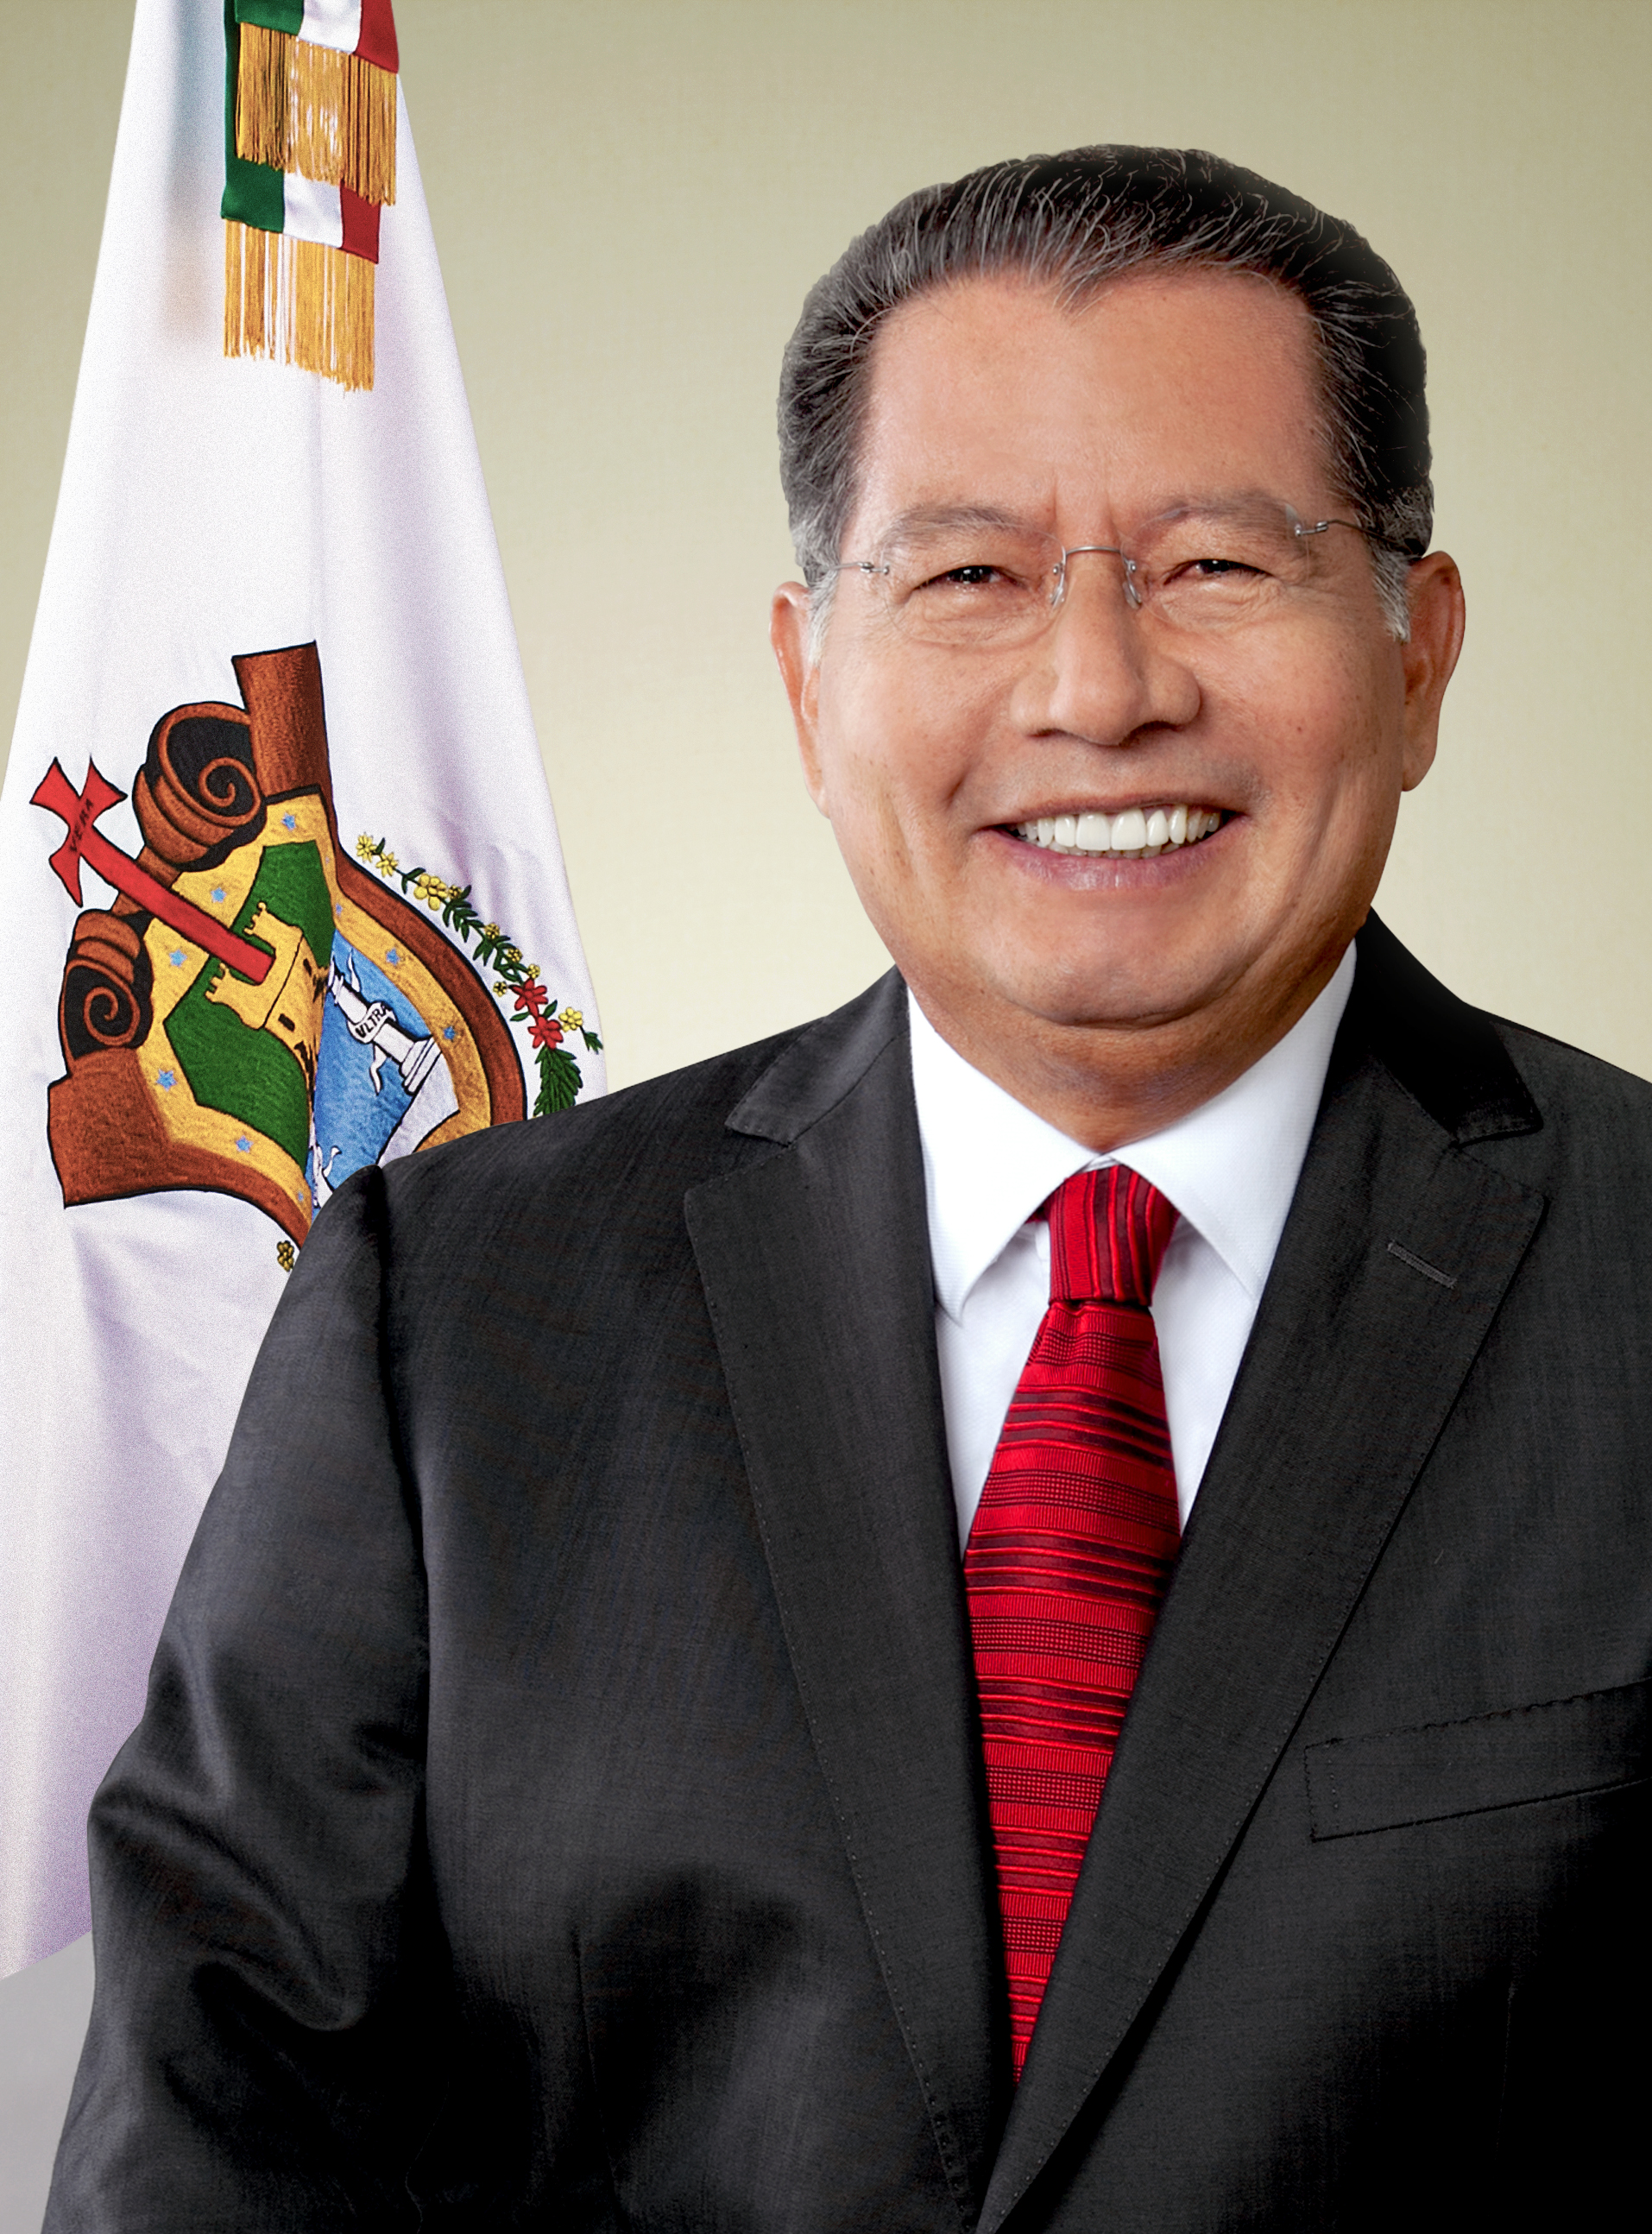 El Congreso nombra gobernador interino del estado mexicano de Veracruz